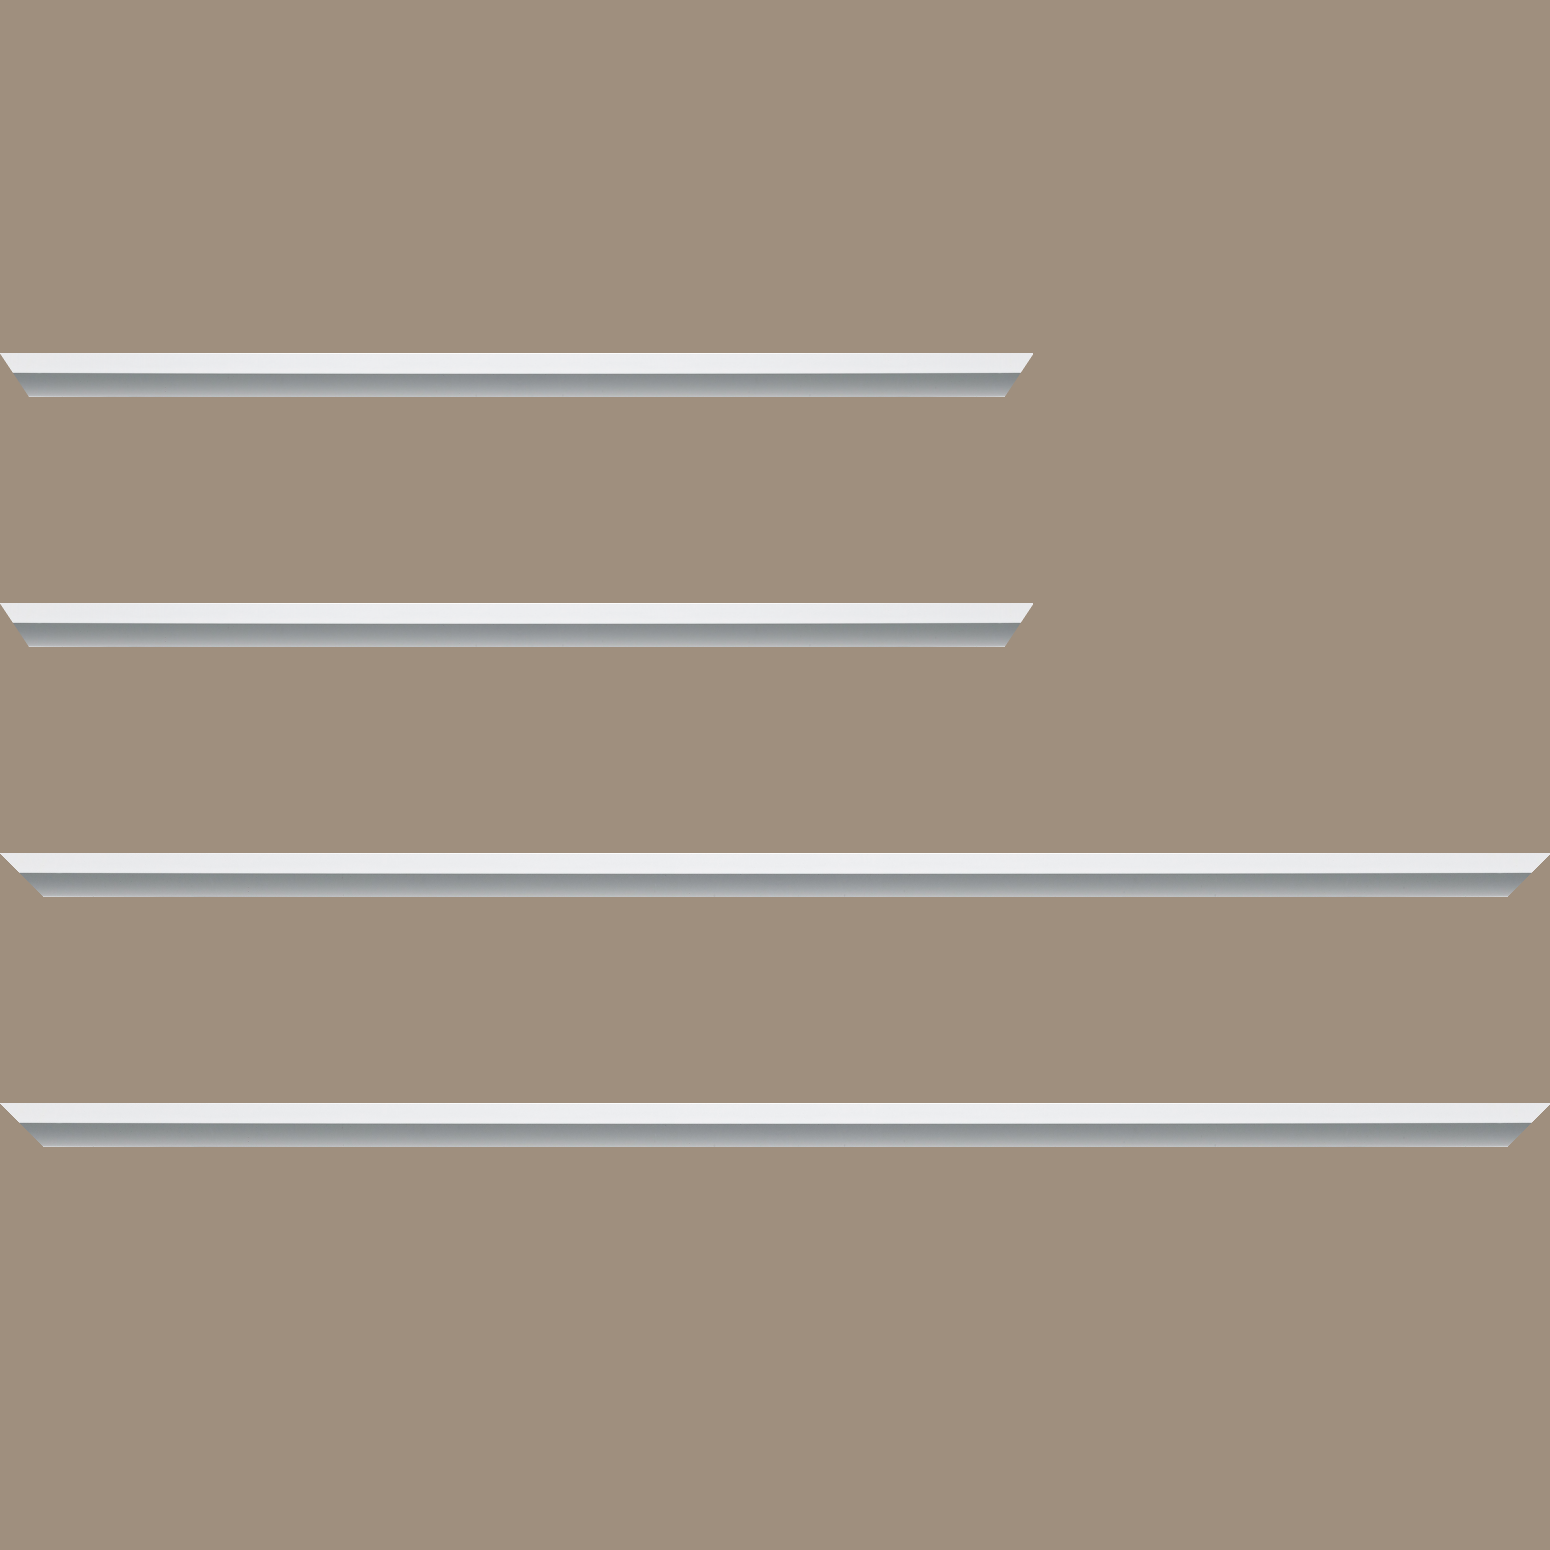 Baguette aluminium profil plat largeur 7mm, couleur blanc mat ,(le sujet qui sera glissé dans le cadre sera en retrait de 9mm de la face du cadre assurant un effet très contemporain) mise en place du sujet rapide et simple: assemblage du cadre par double équerre à vis (livré avec le système d'accrochage qui se glisse dans le profilé) encadrement non assemblé,  livré avec son sachet d'accessoires - 30x90